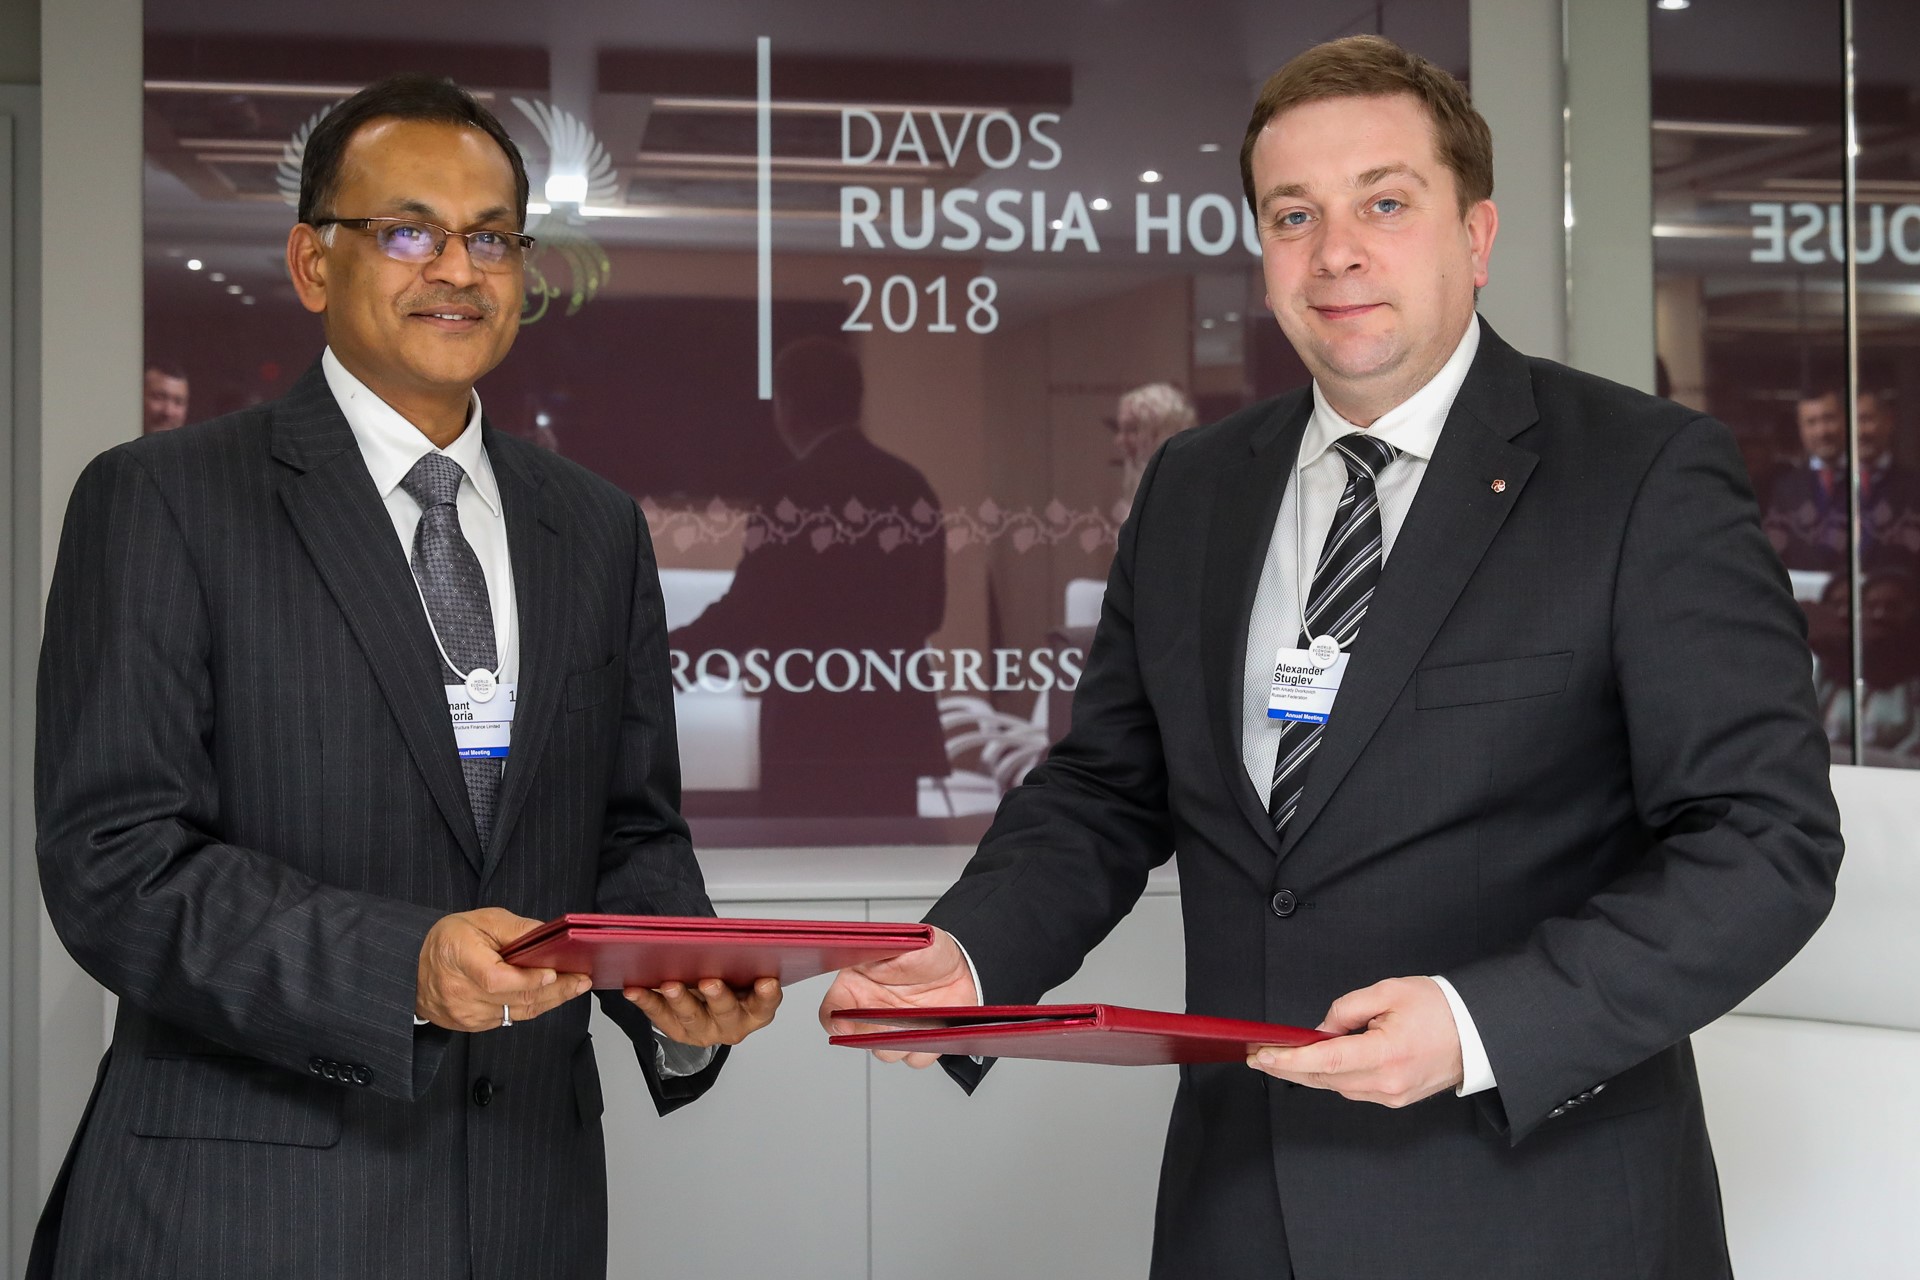 Фонд «Росконгресс» подписал соглашение в «Русском доме» Давос